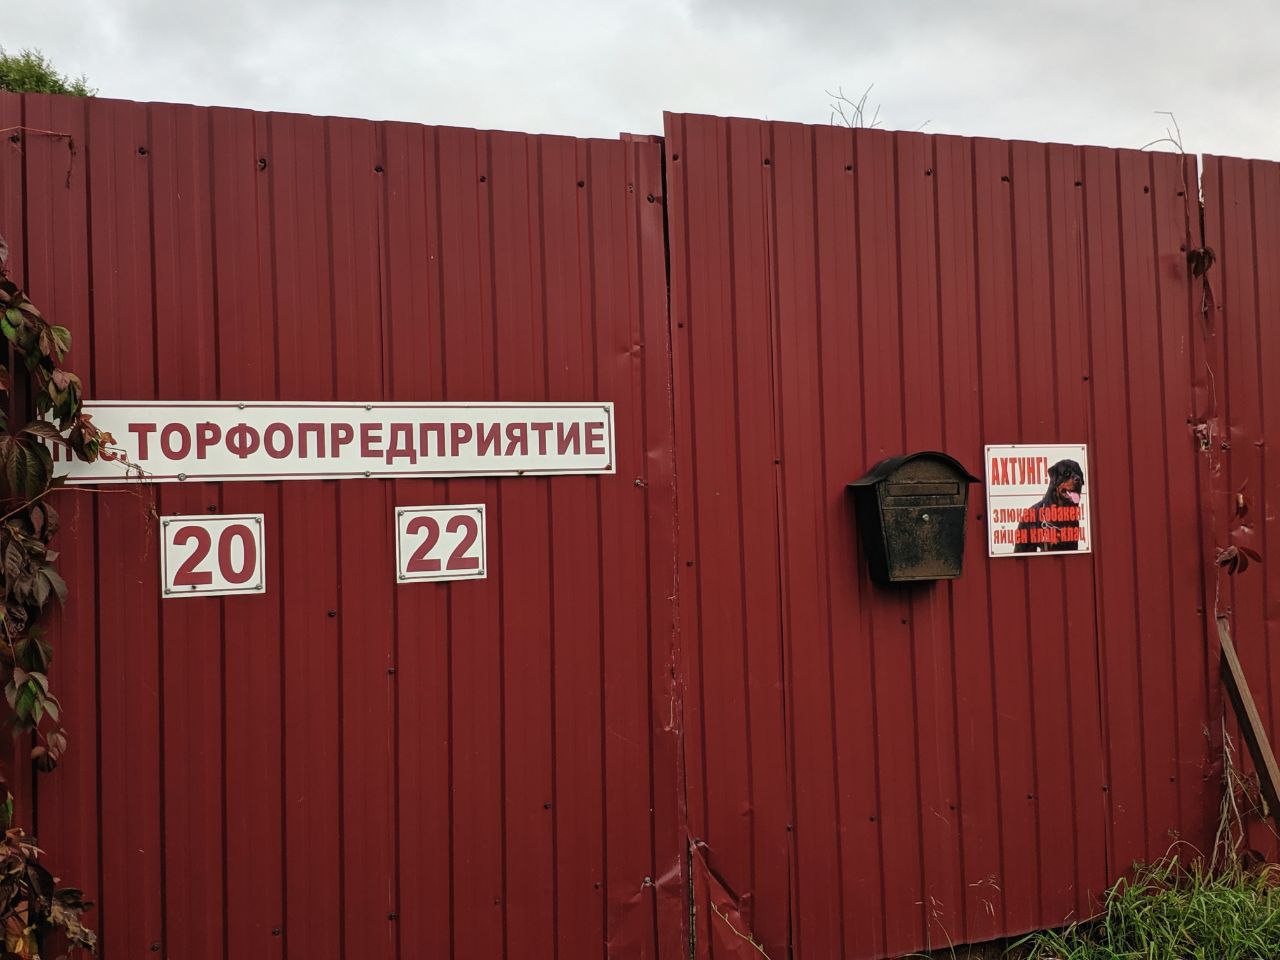 Жители поселка Торфопредприятие не верят в ремонтный спринт «Кротстройсервиса»